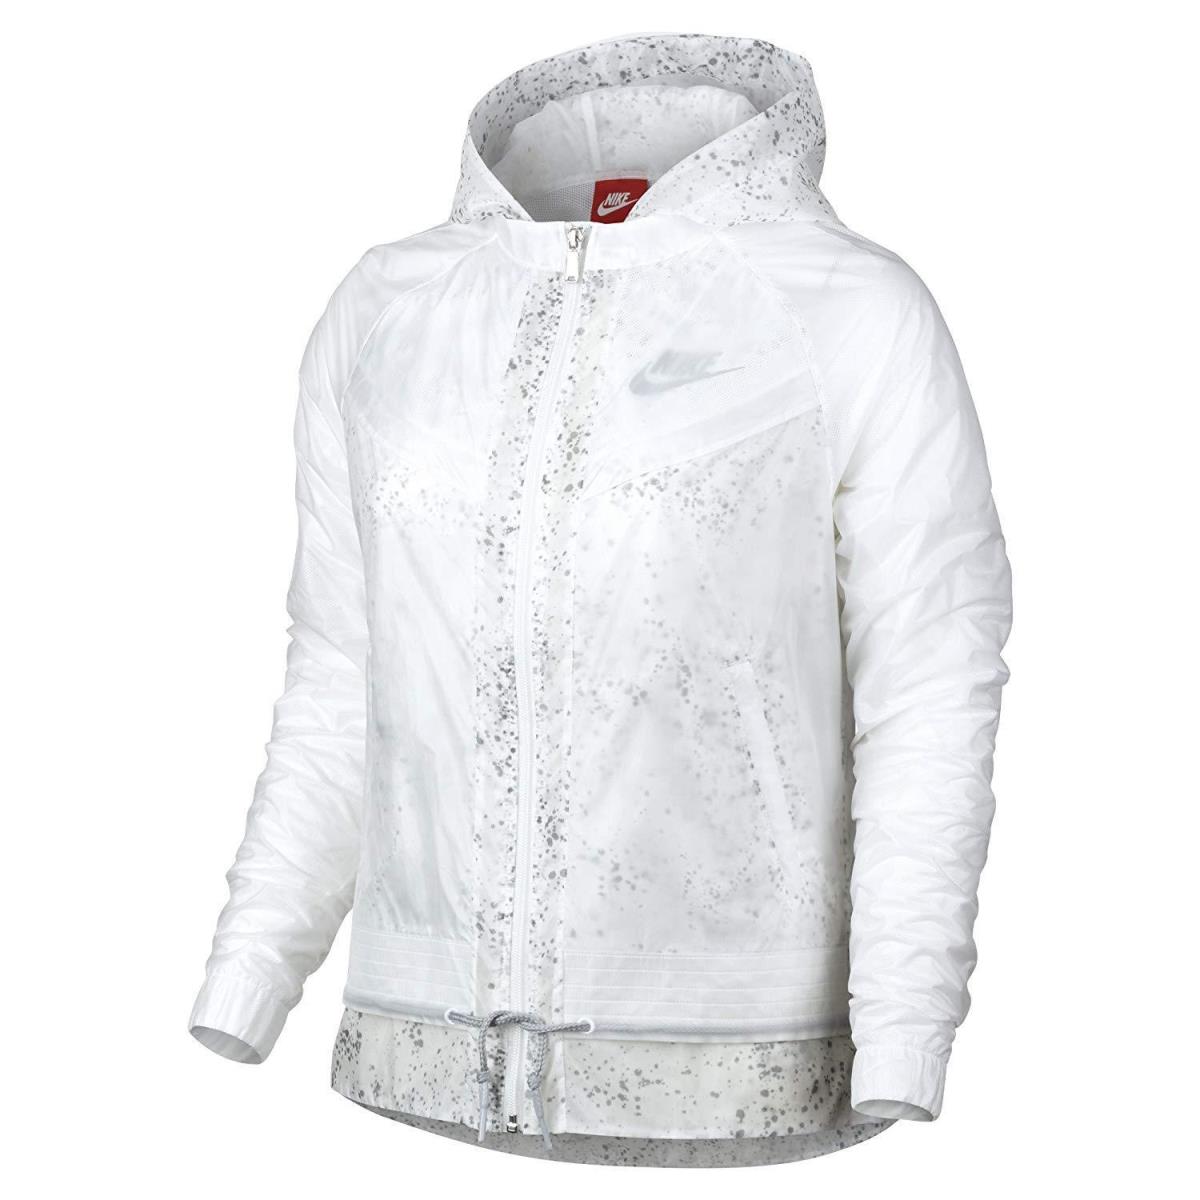 Nike Women`s White Windrunner Splatter Running Jacket - Large - Retail